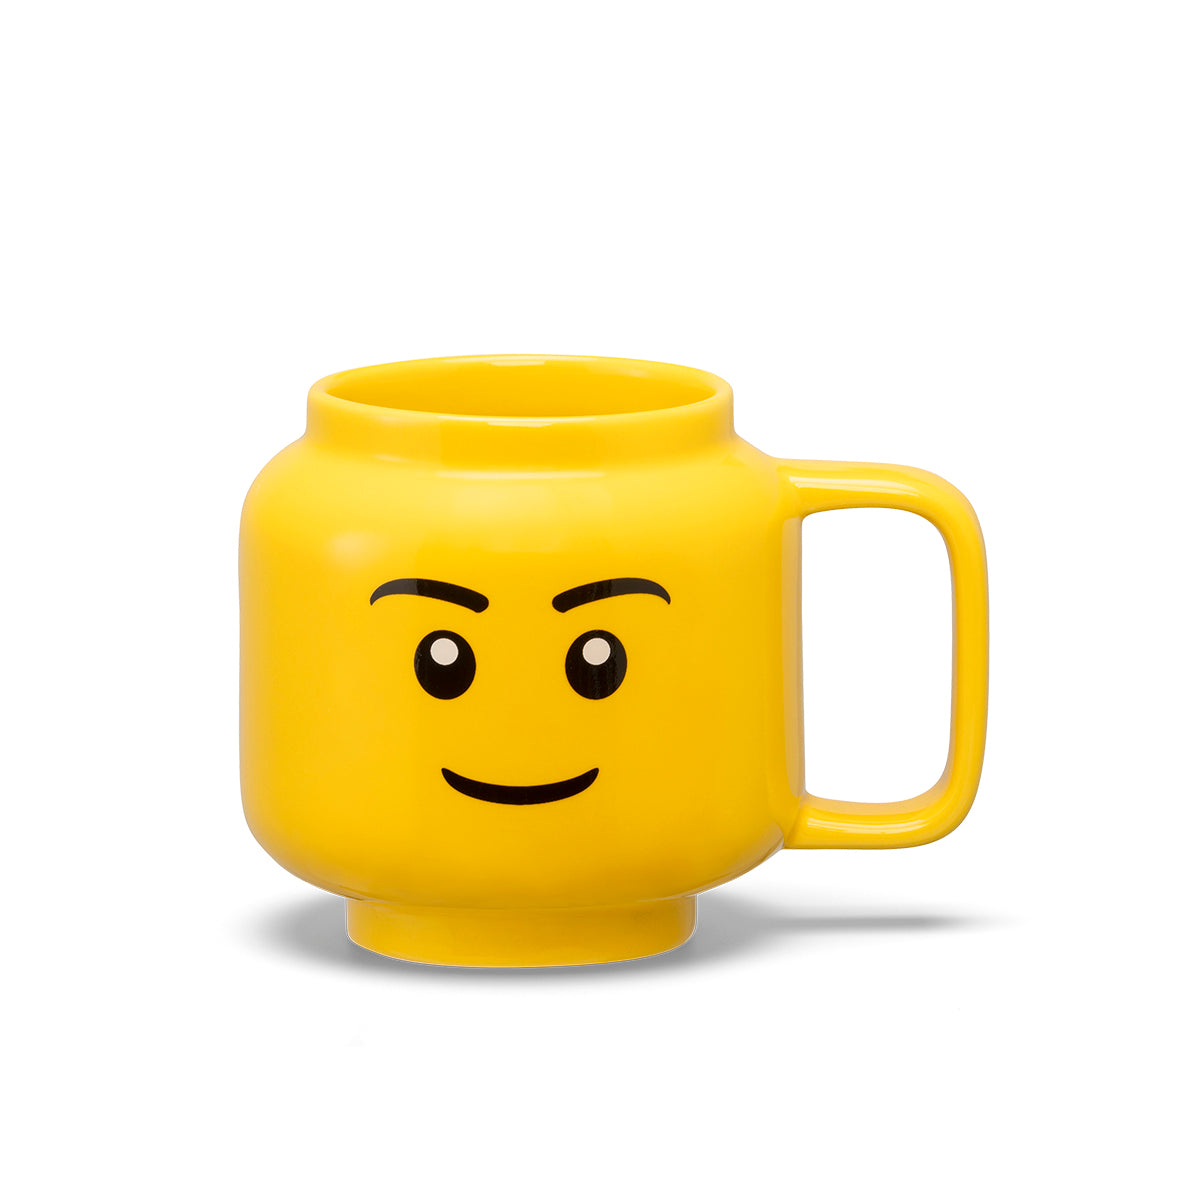 the family store LEGO kids ceramic mug 